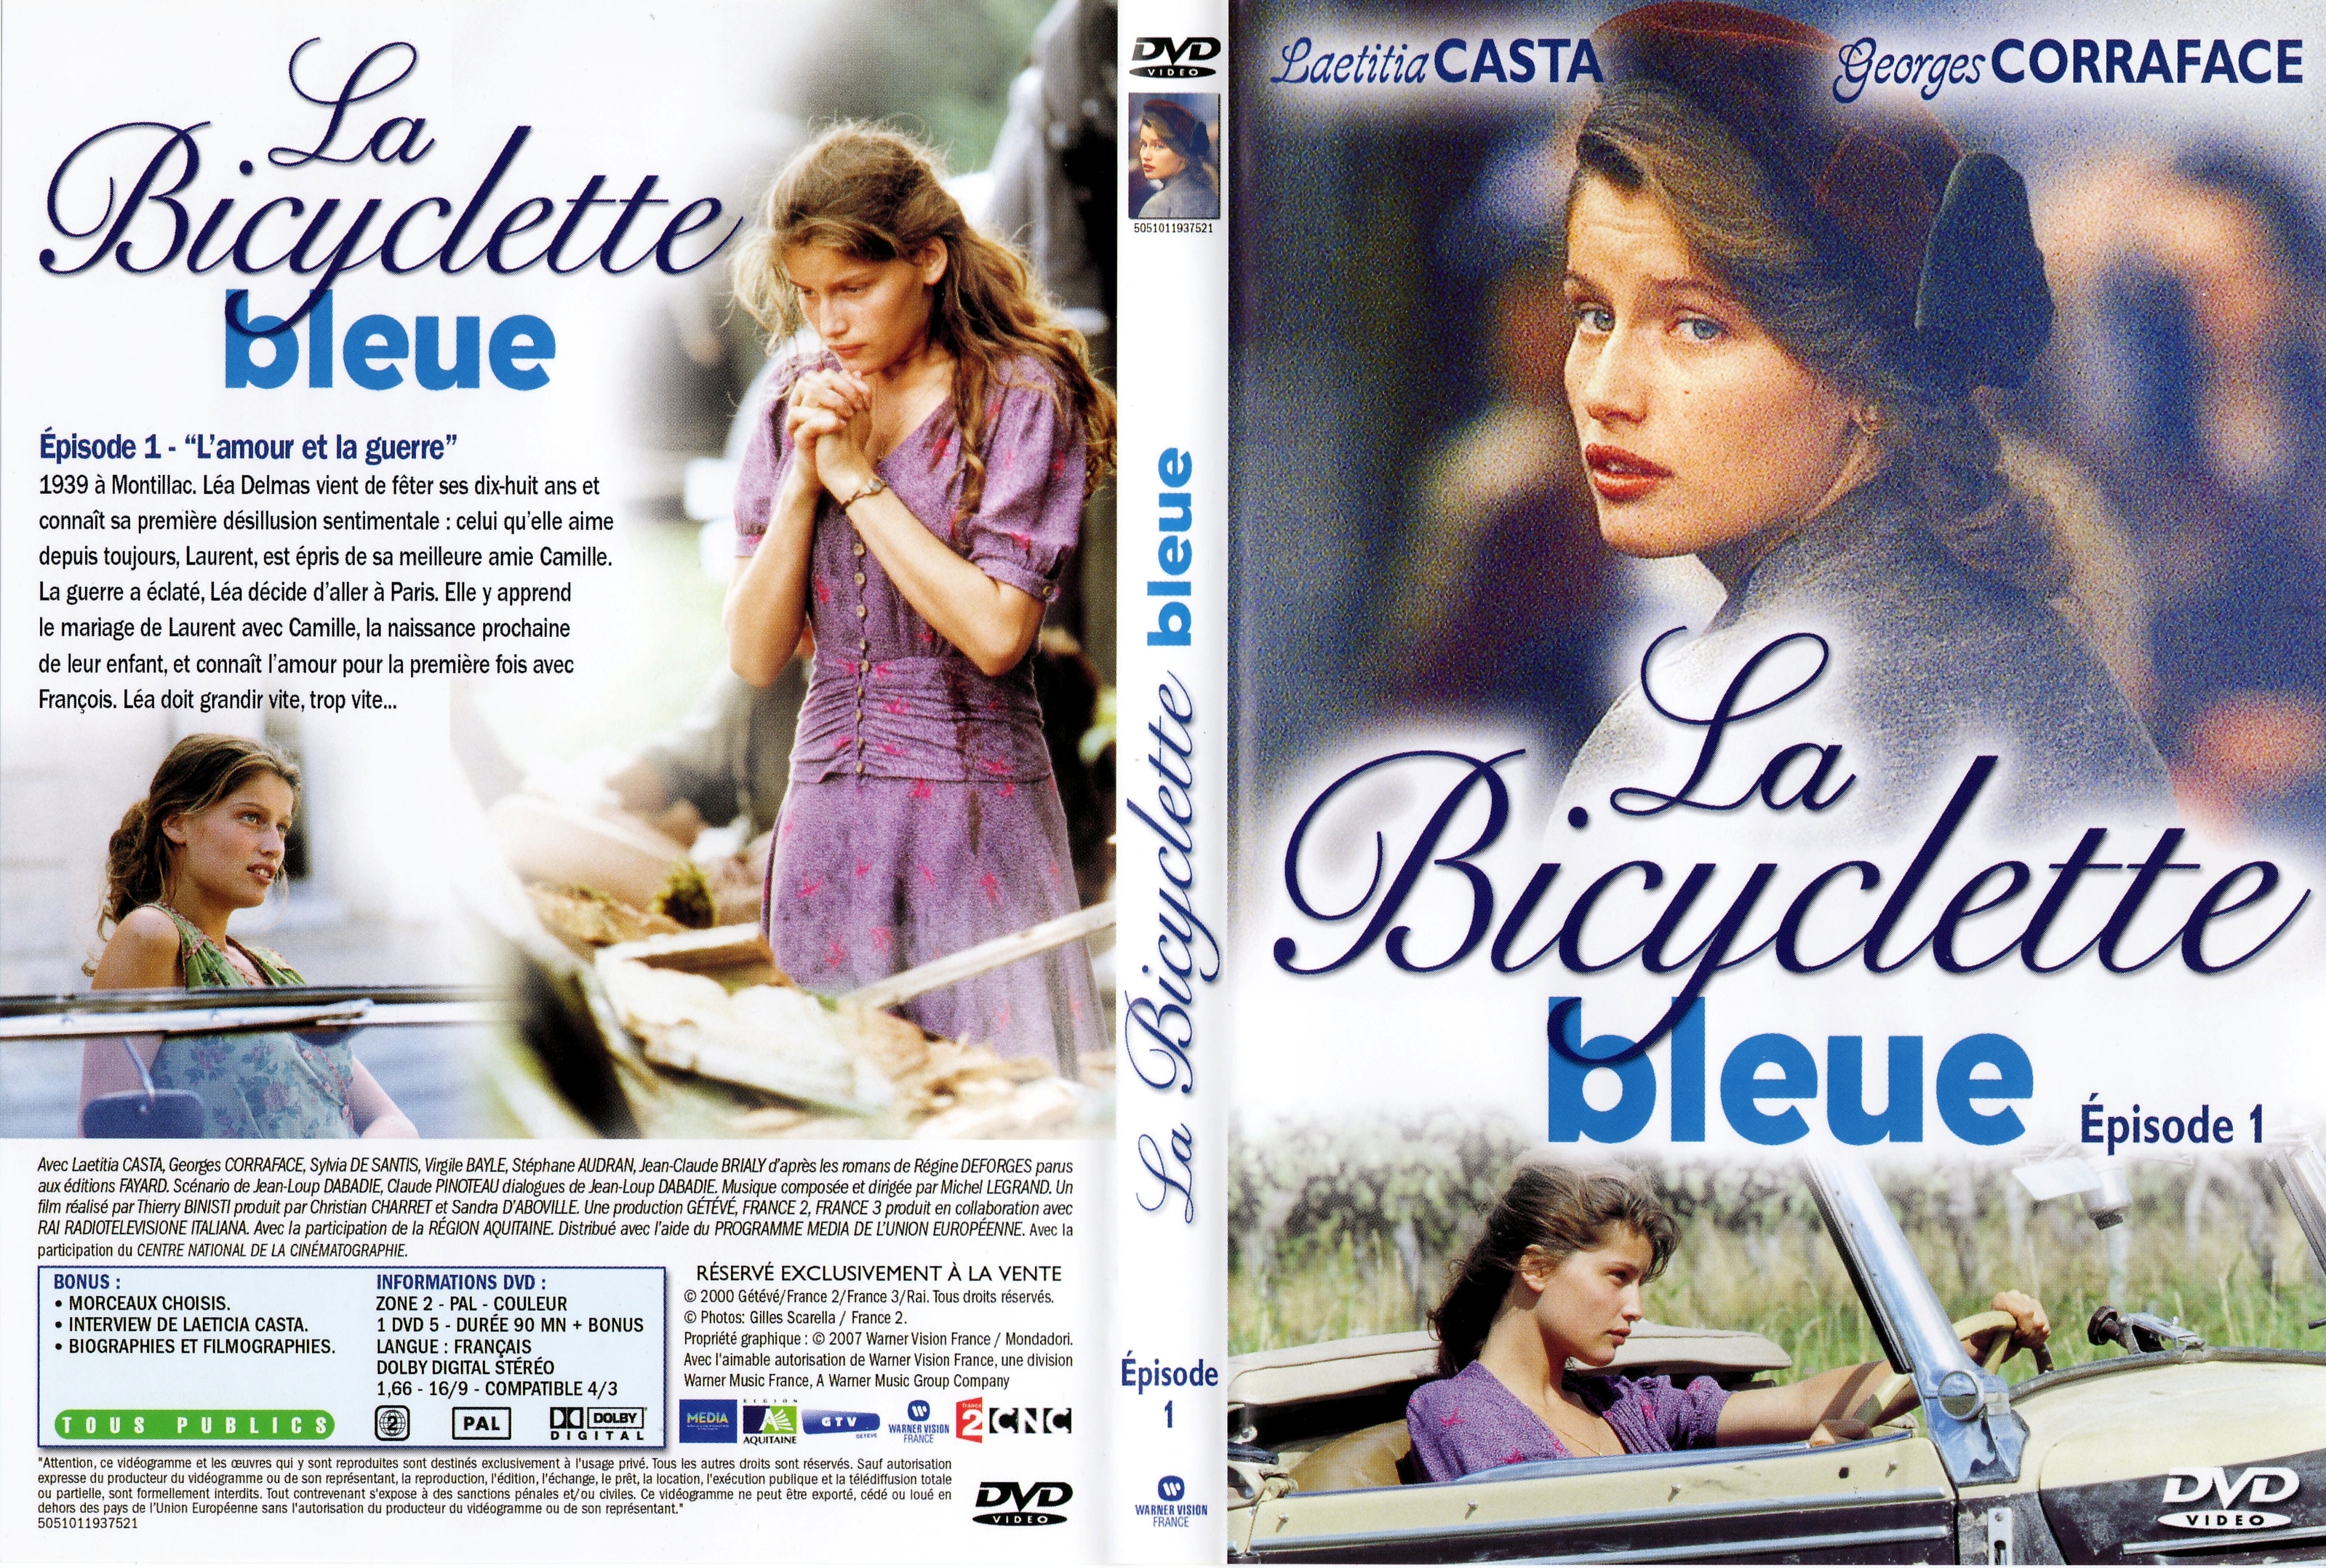 Jaquette DVD La bicyclette bleue Episode 1